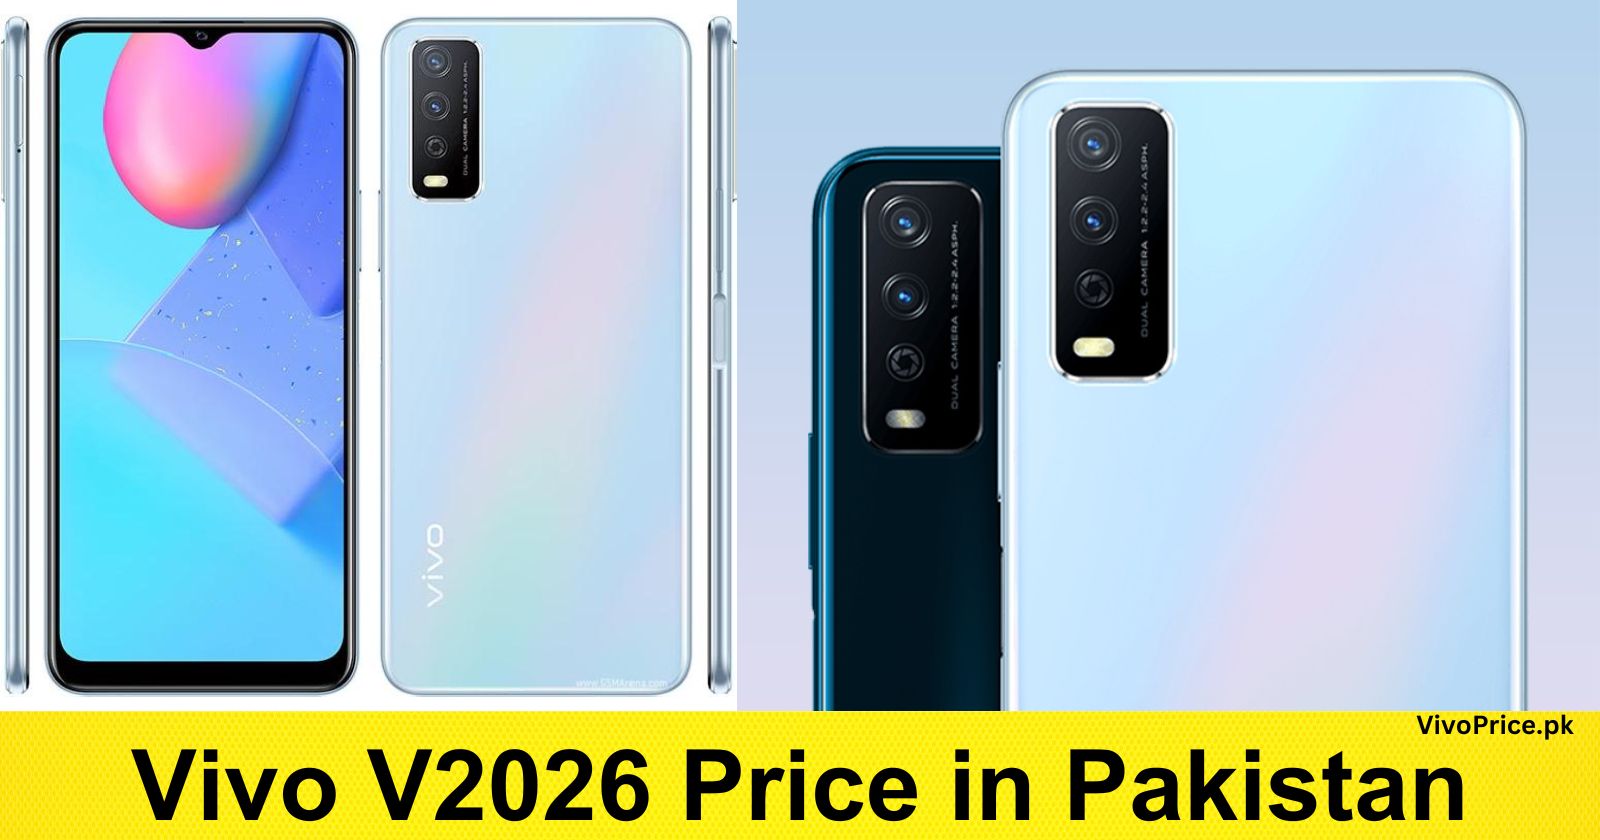 Vivo V2026 Price in Pakistan | VivoPrice.pk